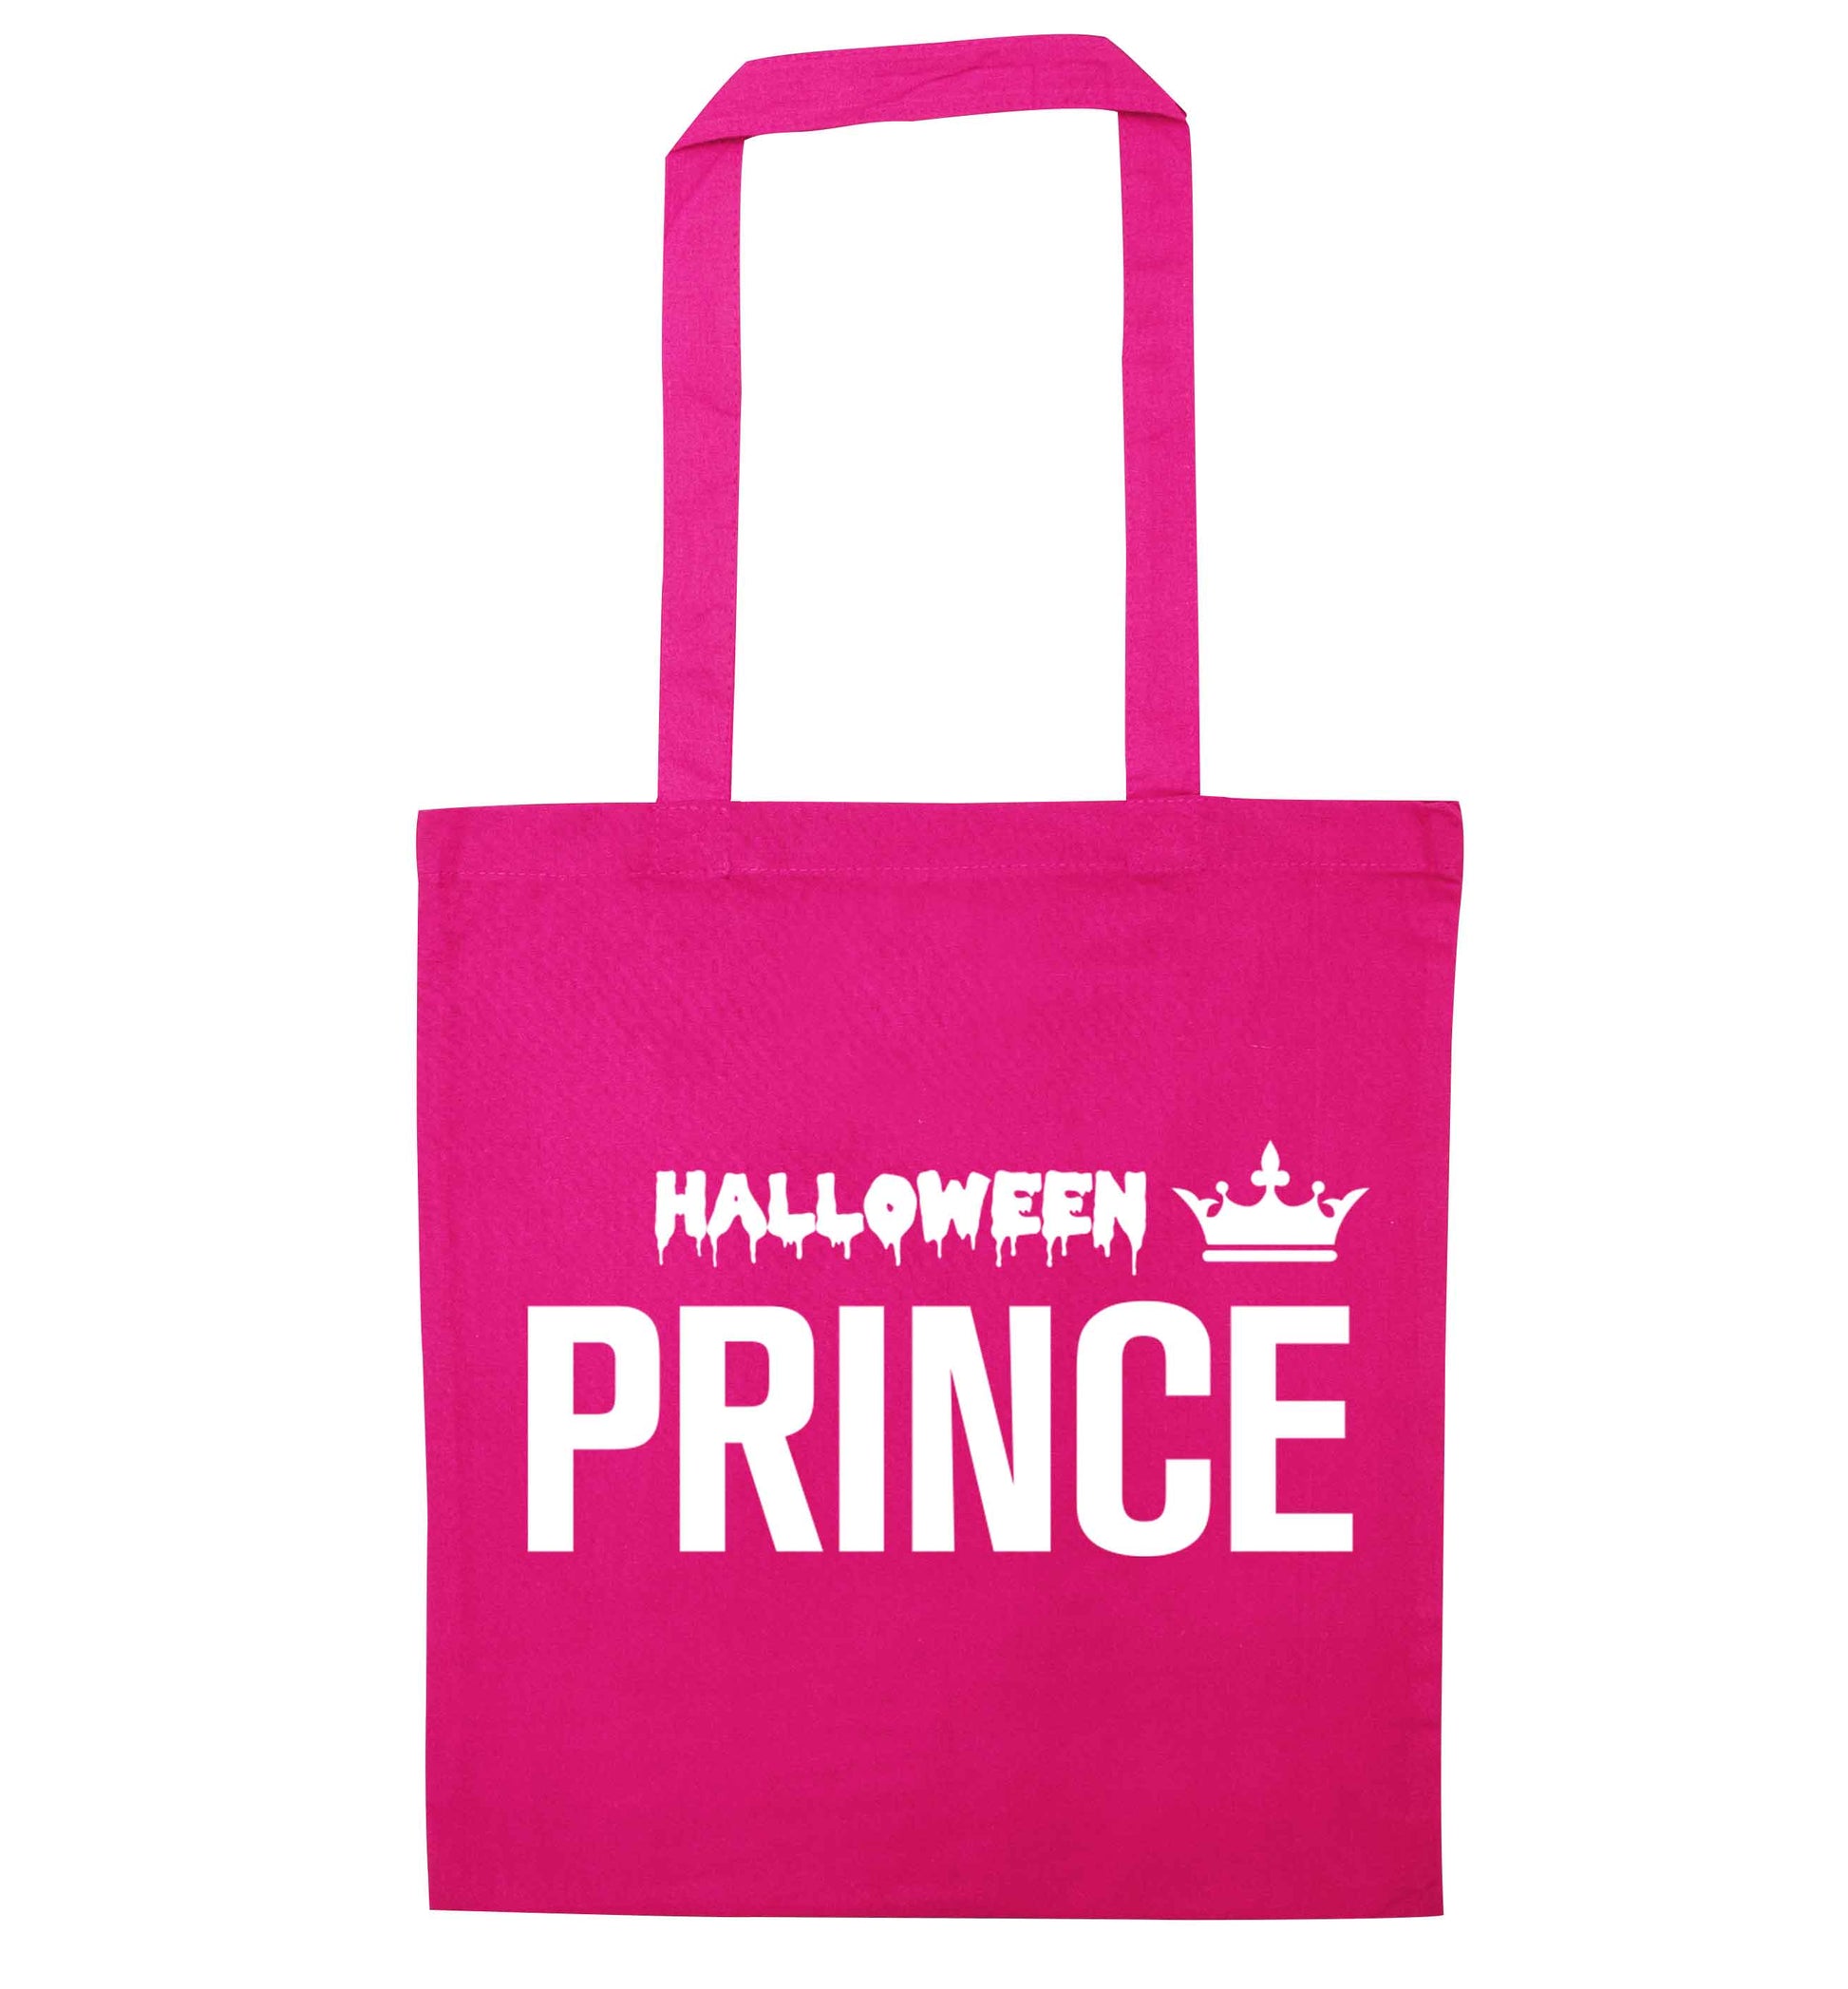 Halloween prince pink tote bag